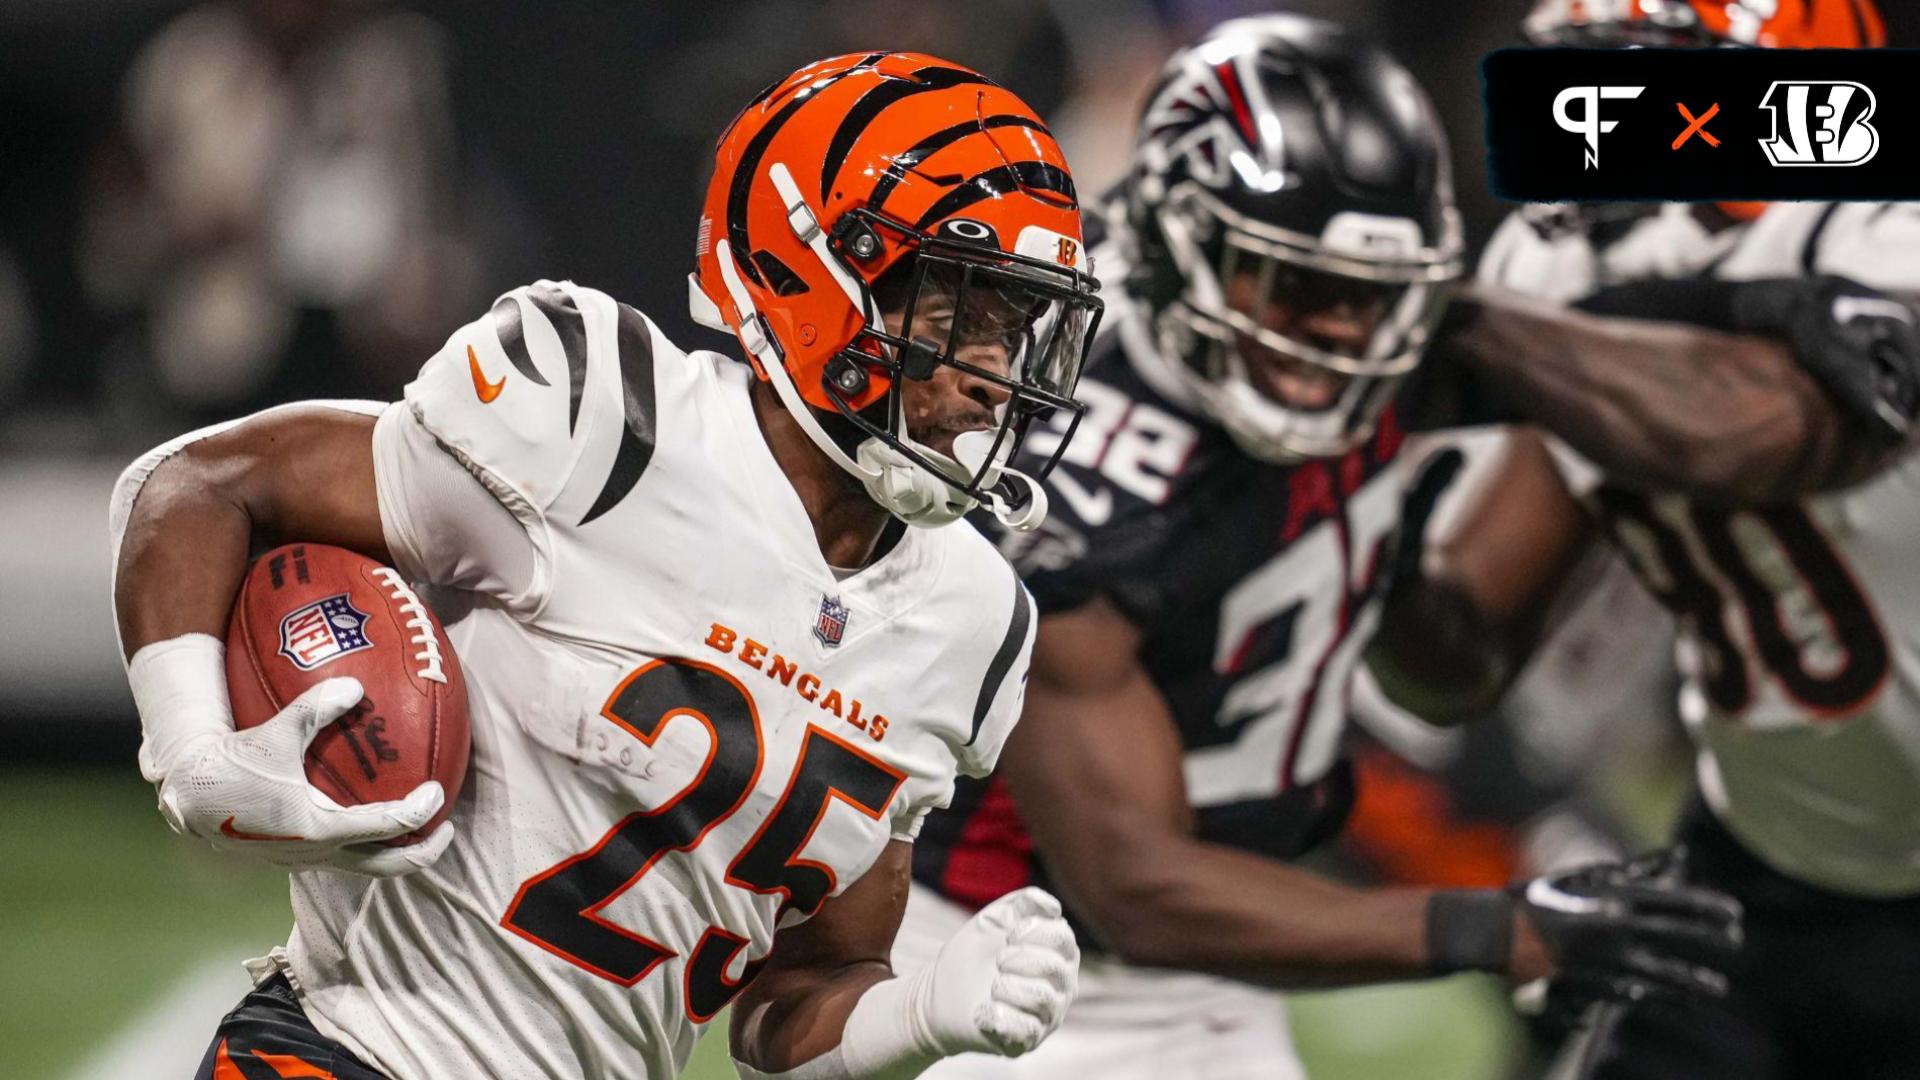 Cincinnati Bengals 7-round 2022 NFL mock draft at bye week